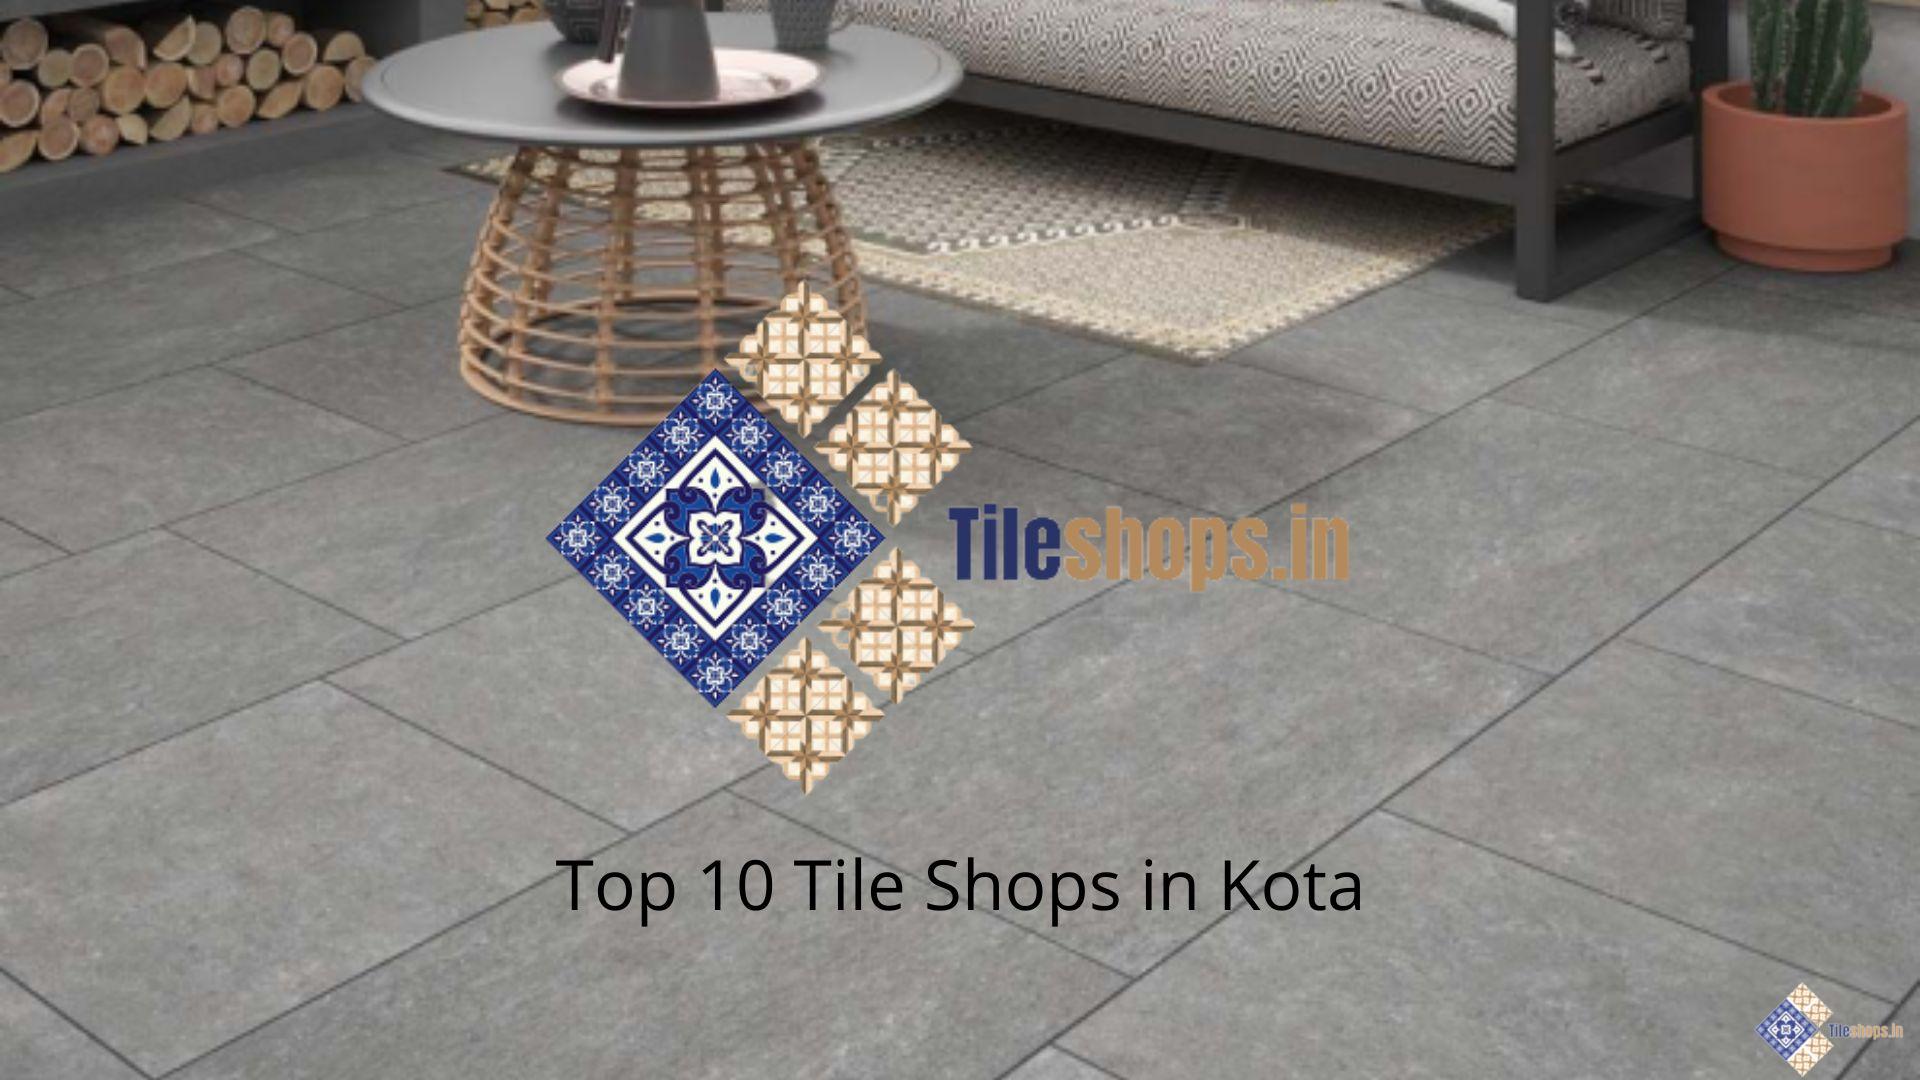 Top 10 Tile Shops in Kota